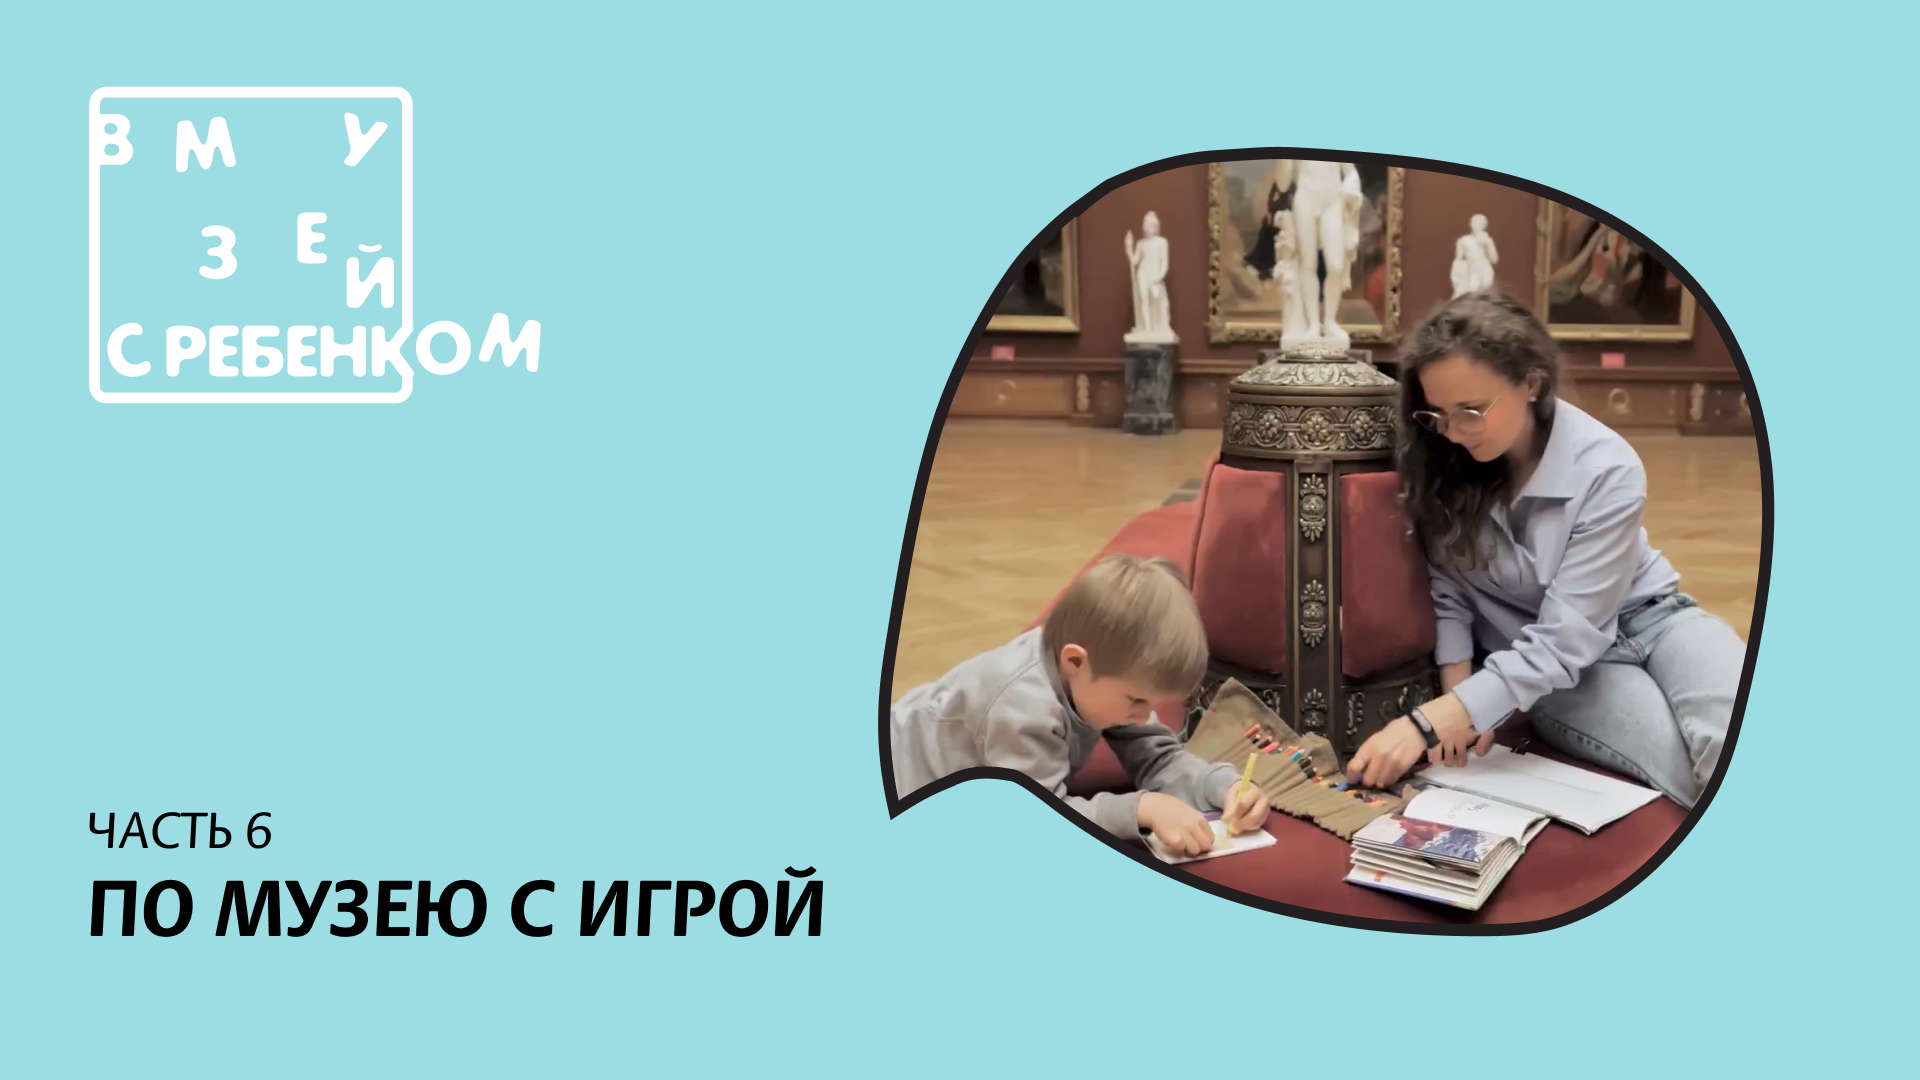 "В музей с ребенком". Видеорекомендации для родителей. По музею с игрой.